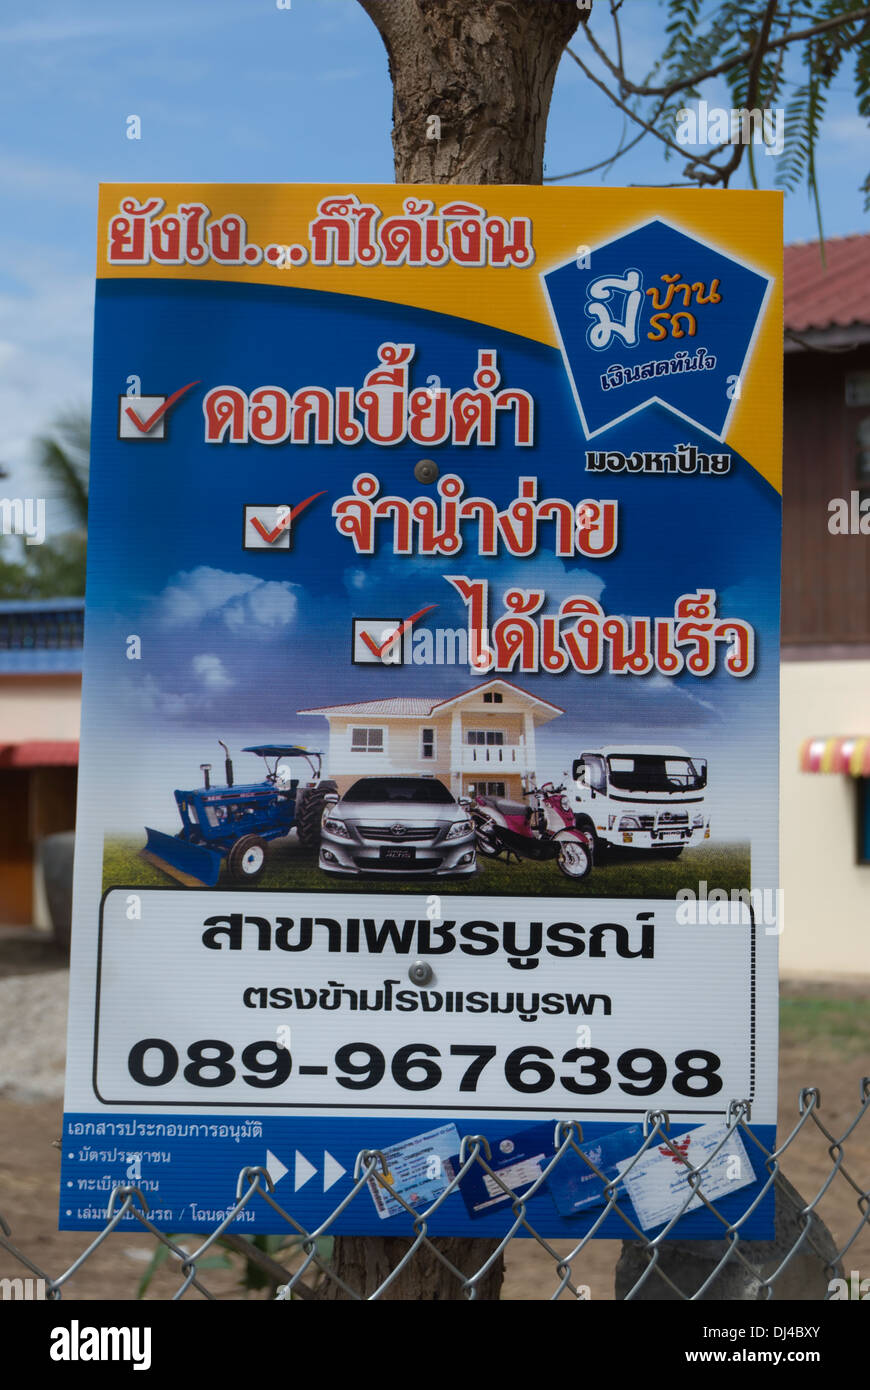 Signe de langue thaï offrant des prêts d'argent, en Thaïlande, de phetchabun Banque D'Images